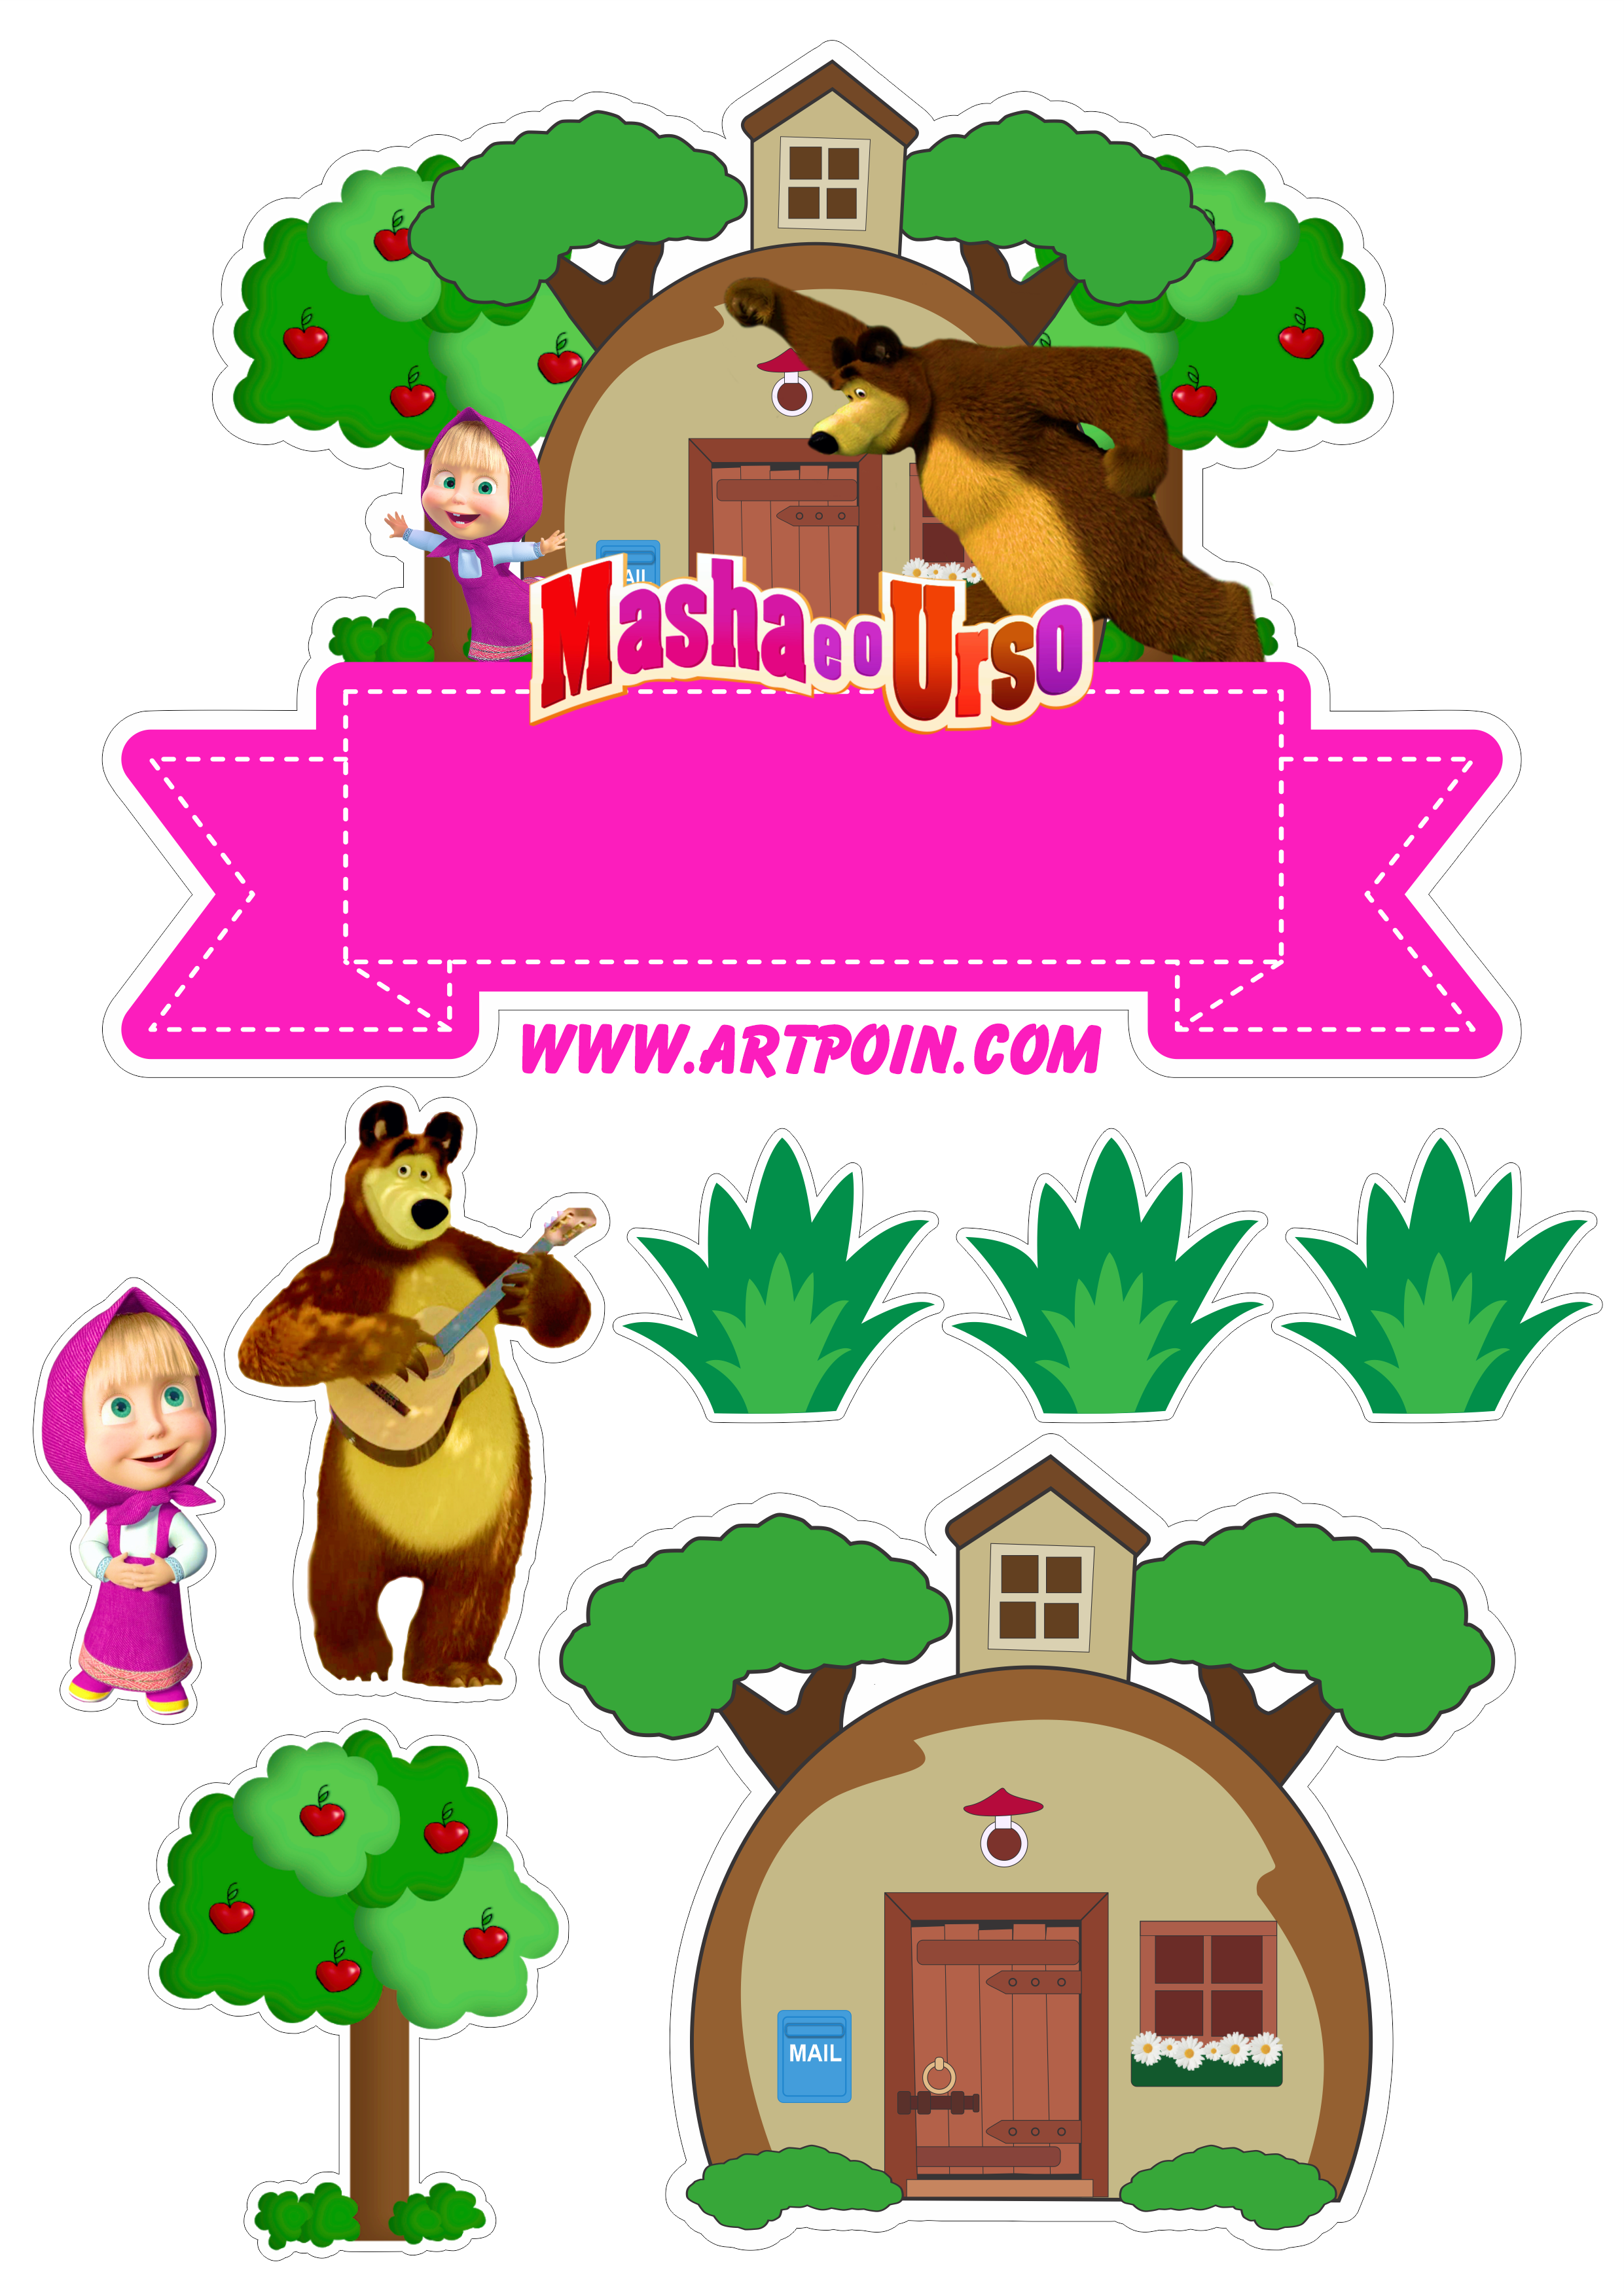 Topo de bolo para imprimir Masha e o Urso animais flores casinha no bosque pack de imagens para festa artes gráficas png